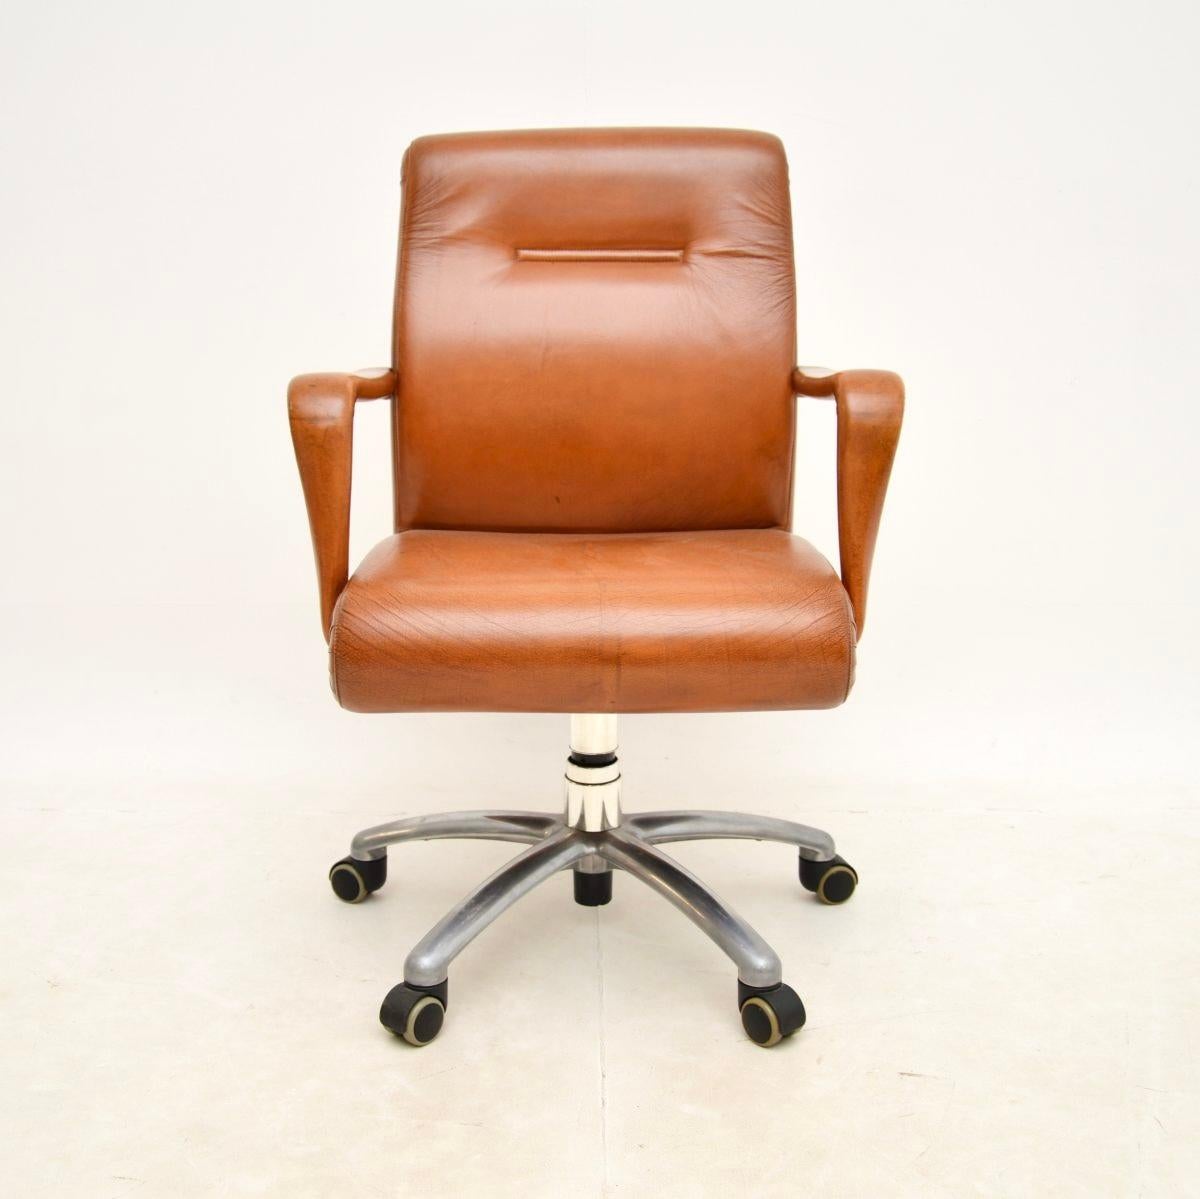 Une chaise de bureau pivotante en cuir italien vintage très élégante, bien fabriquée et extrêmement confortable par Poltrona Frau. Fabriqué en Italie, il date de la fin du XXe siècle.

La qualité est exceptionnelle, il est revêtu d'un magnifique